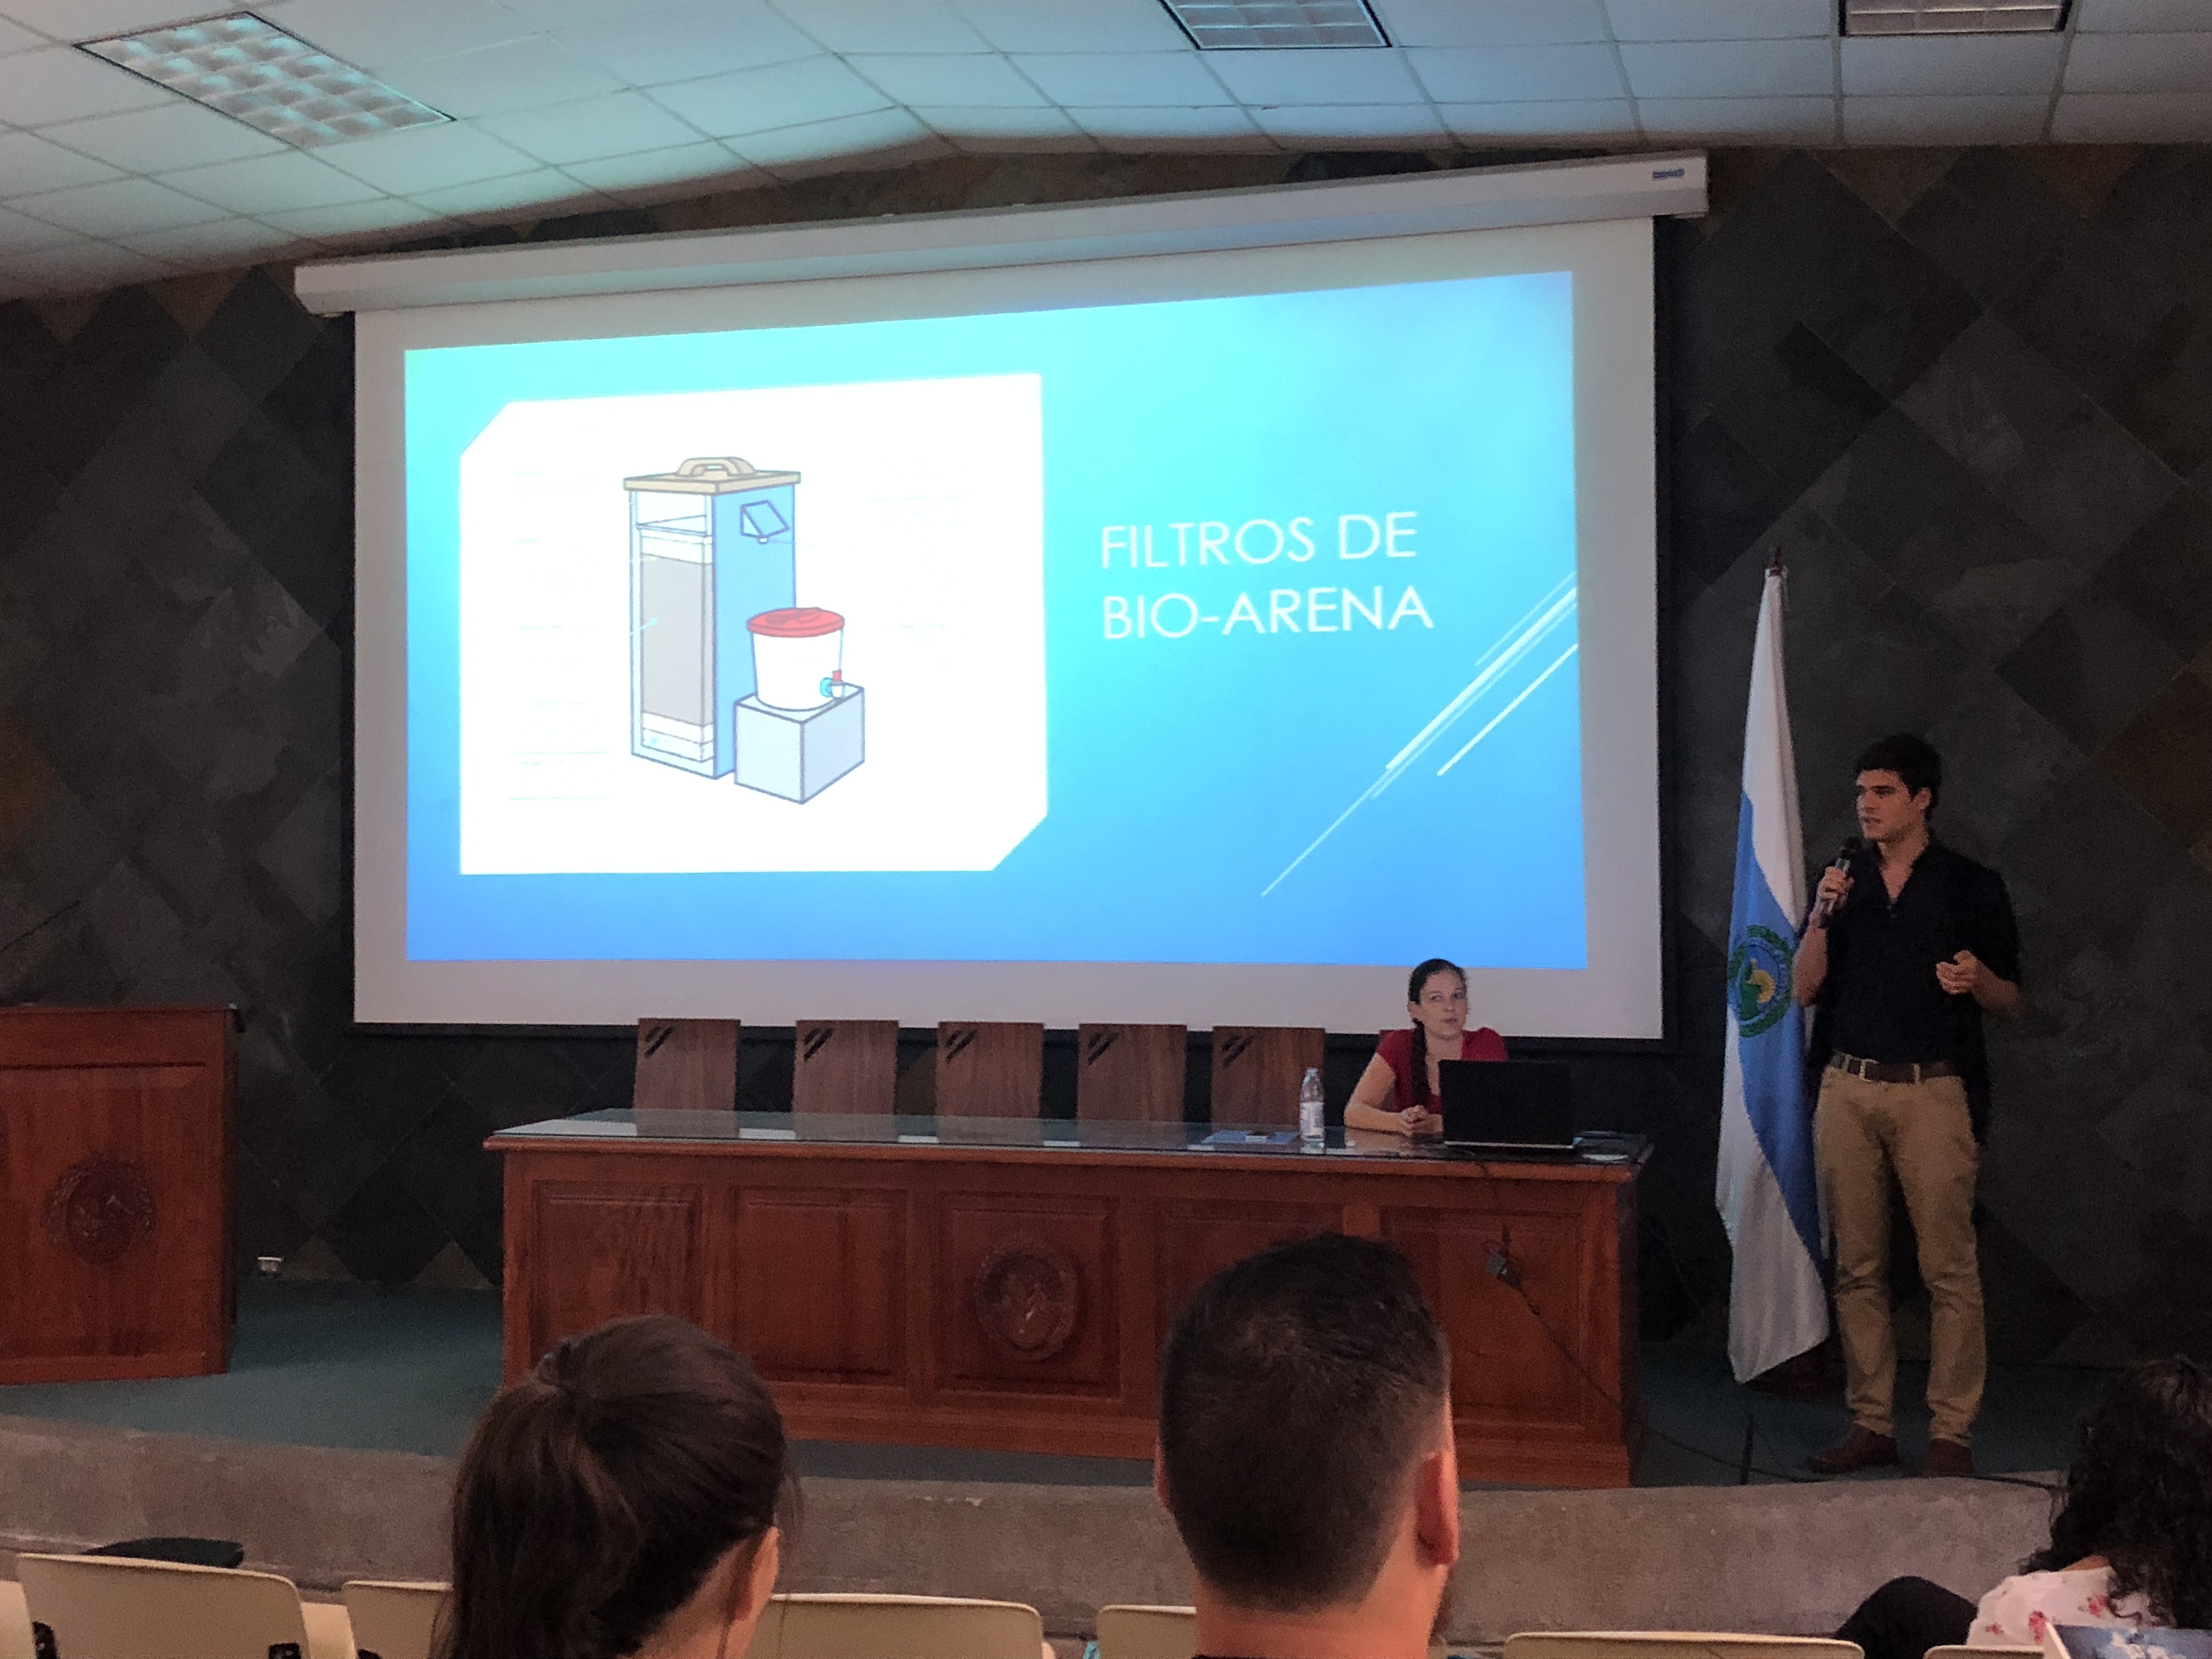 Estudiantes presentan el prototipo del filtro de bioarena construido en la comunidad de Caletas. Foto por: Leonardo Garita Alvarado